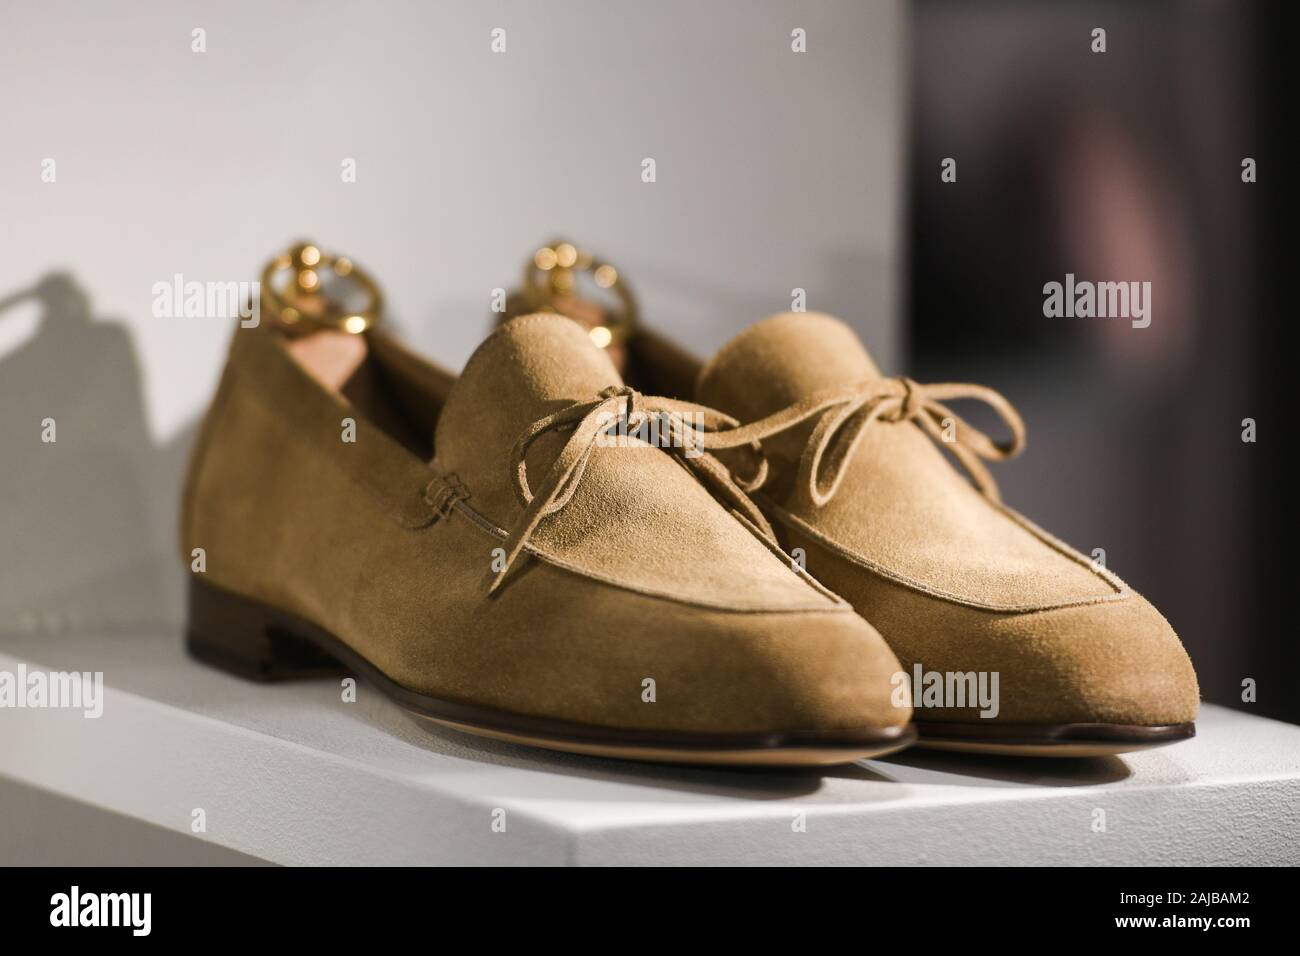 Tods shoes immagini e fotografie stock ad alta risoluzione - Alamy